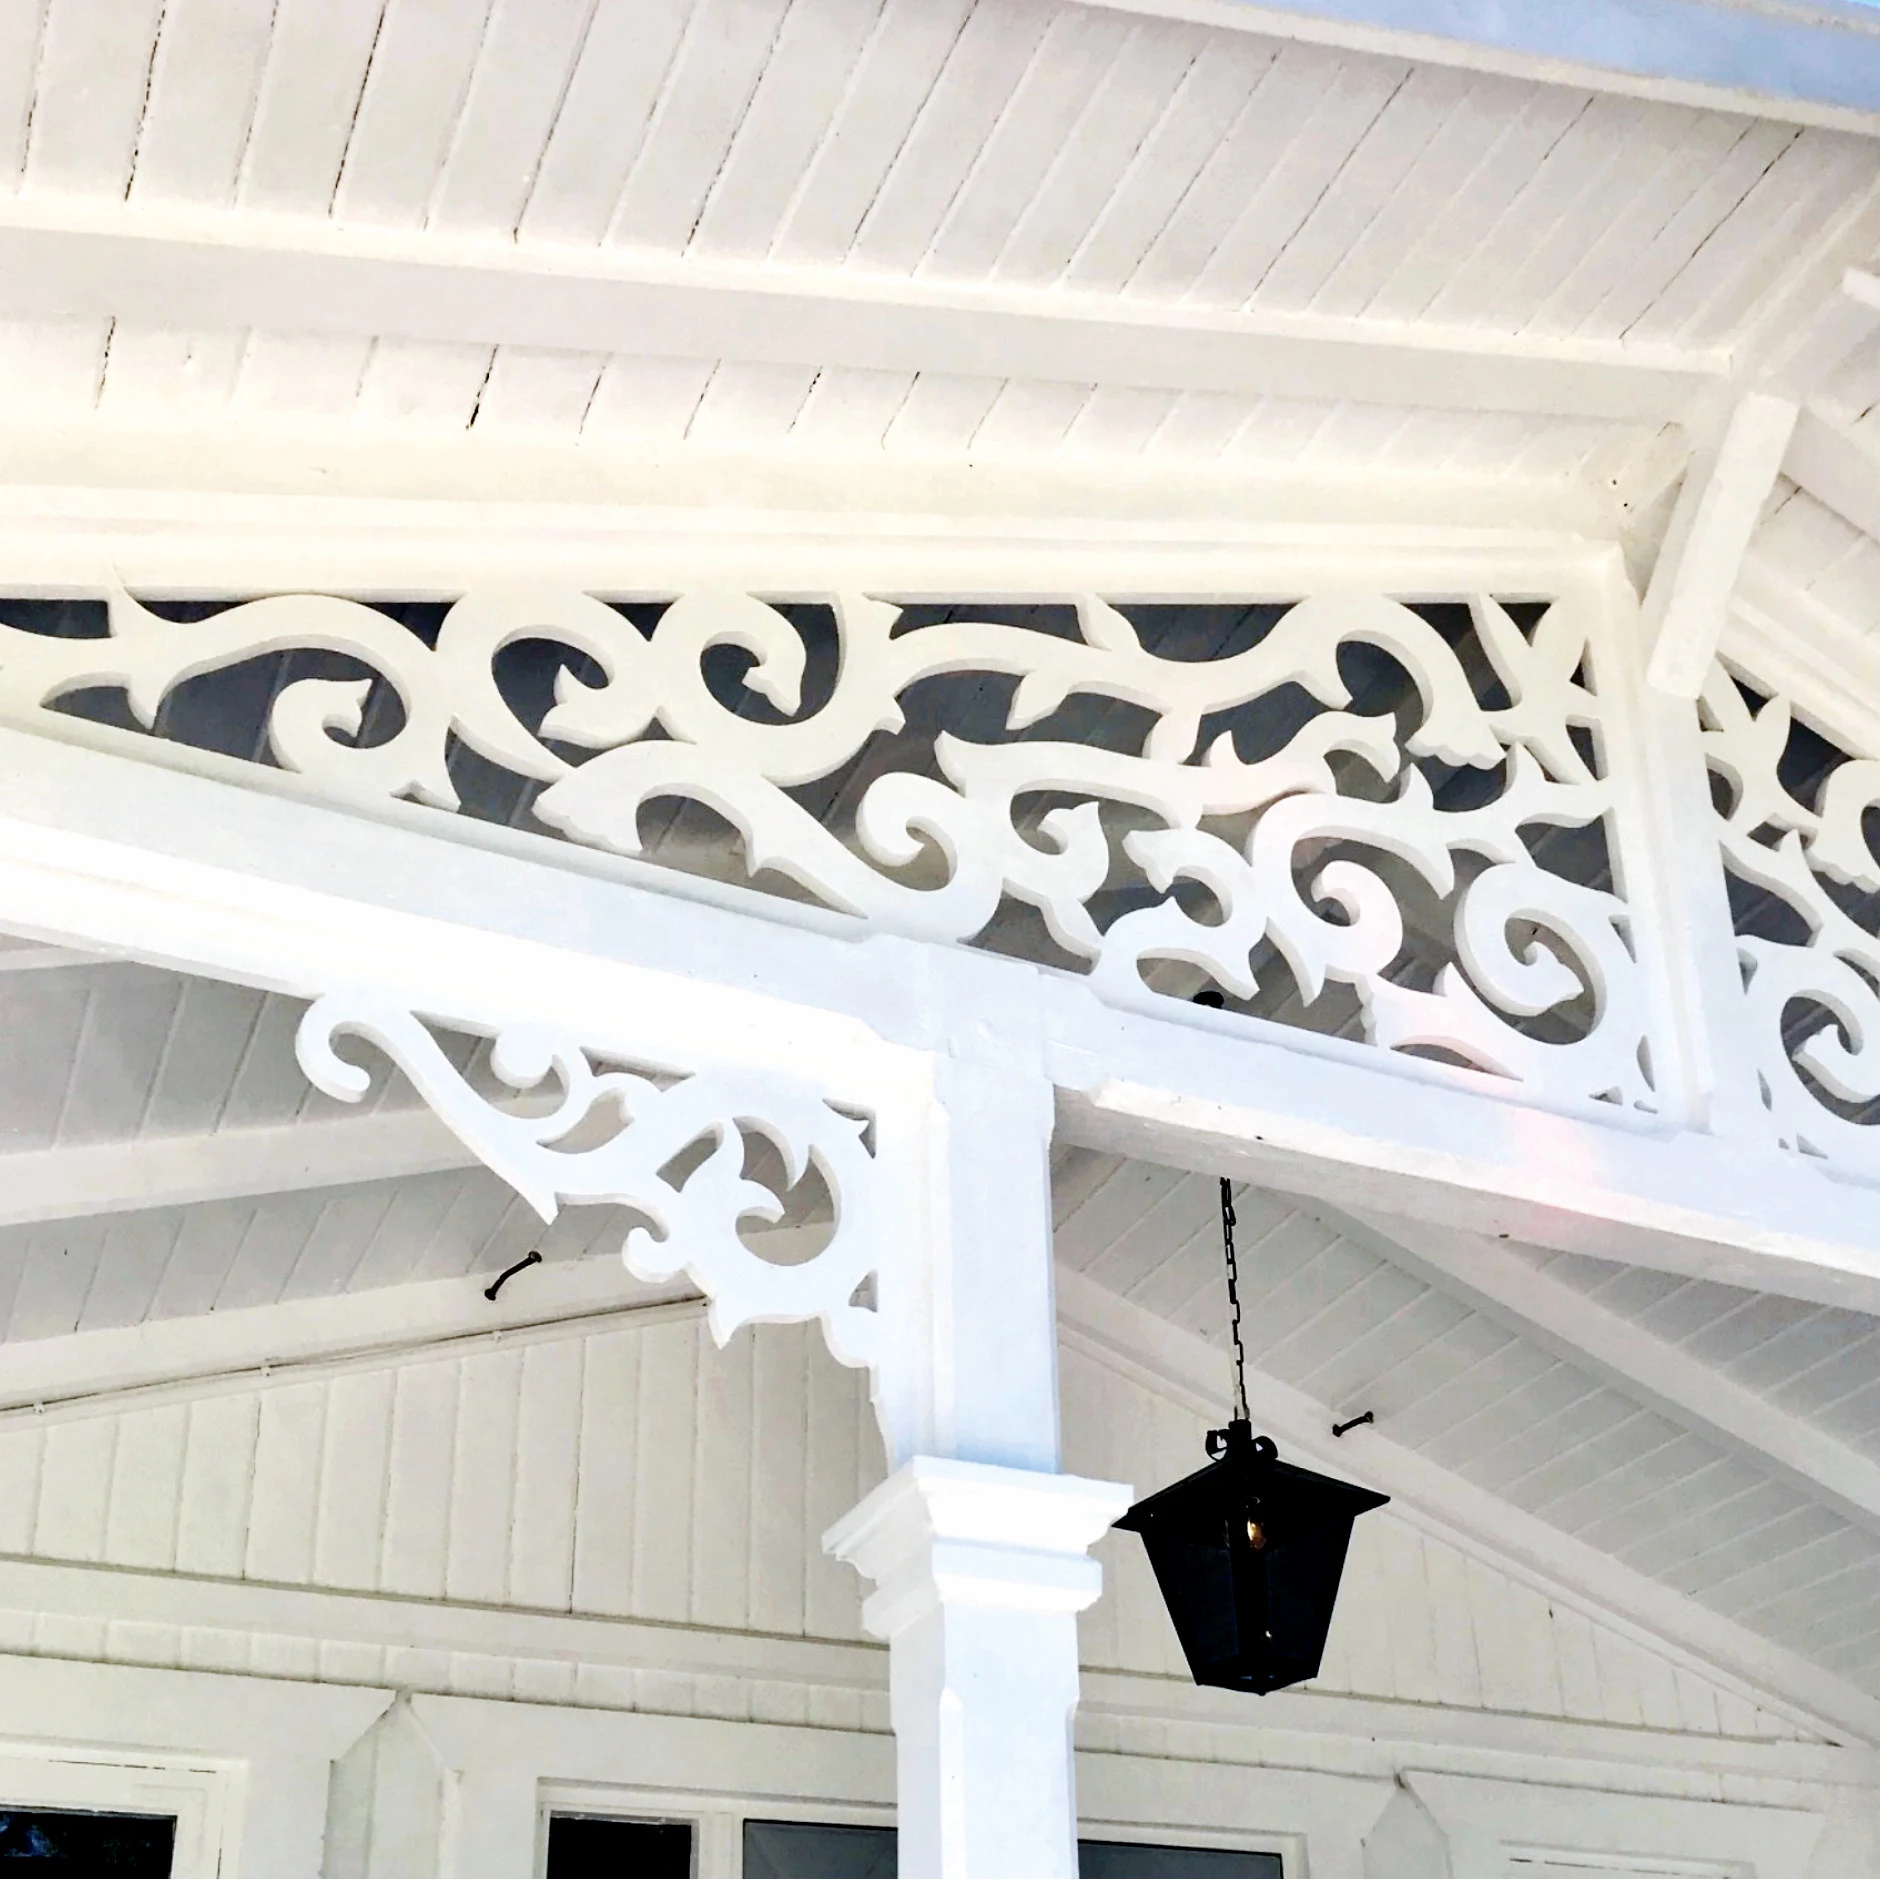 En vit veranda med snickarglädje, träkonsoler monterade utomhus i anslutning till stolpe och träornament i gammal stil med inspiration från sekelskifte, 1800-tal